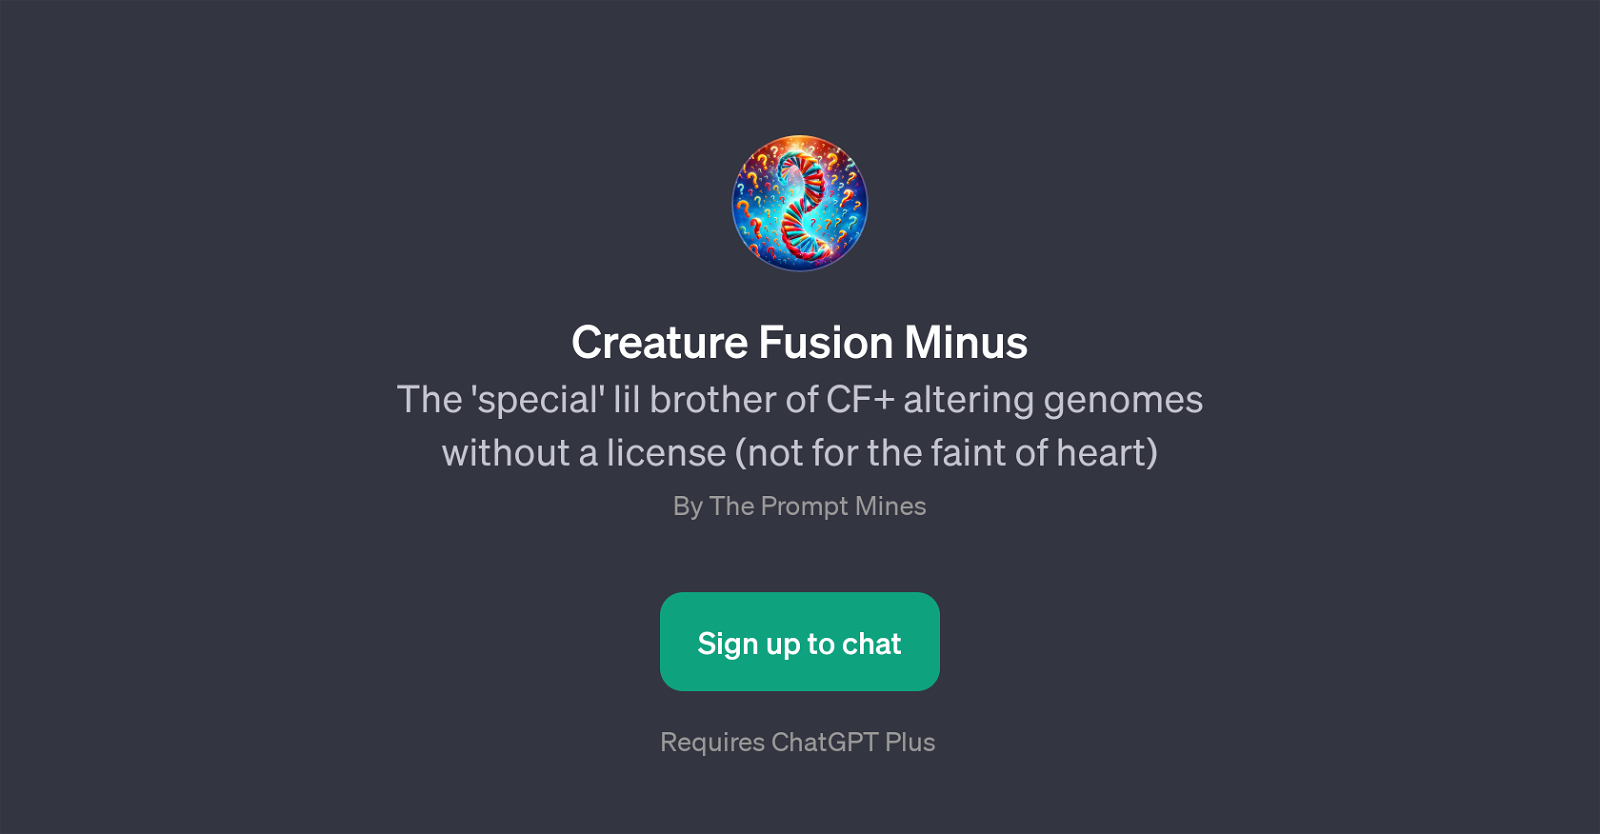 Creature Fusion Minus website